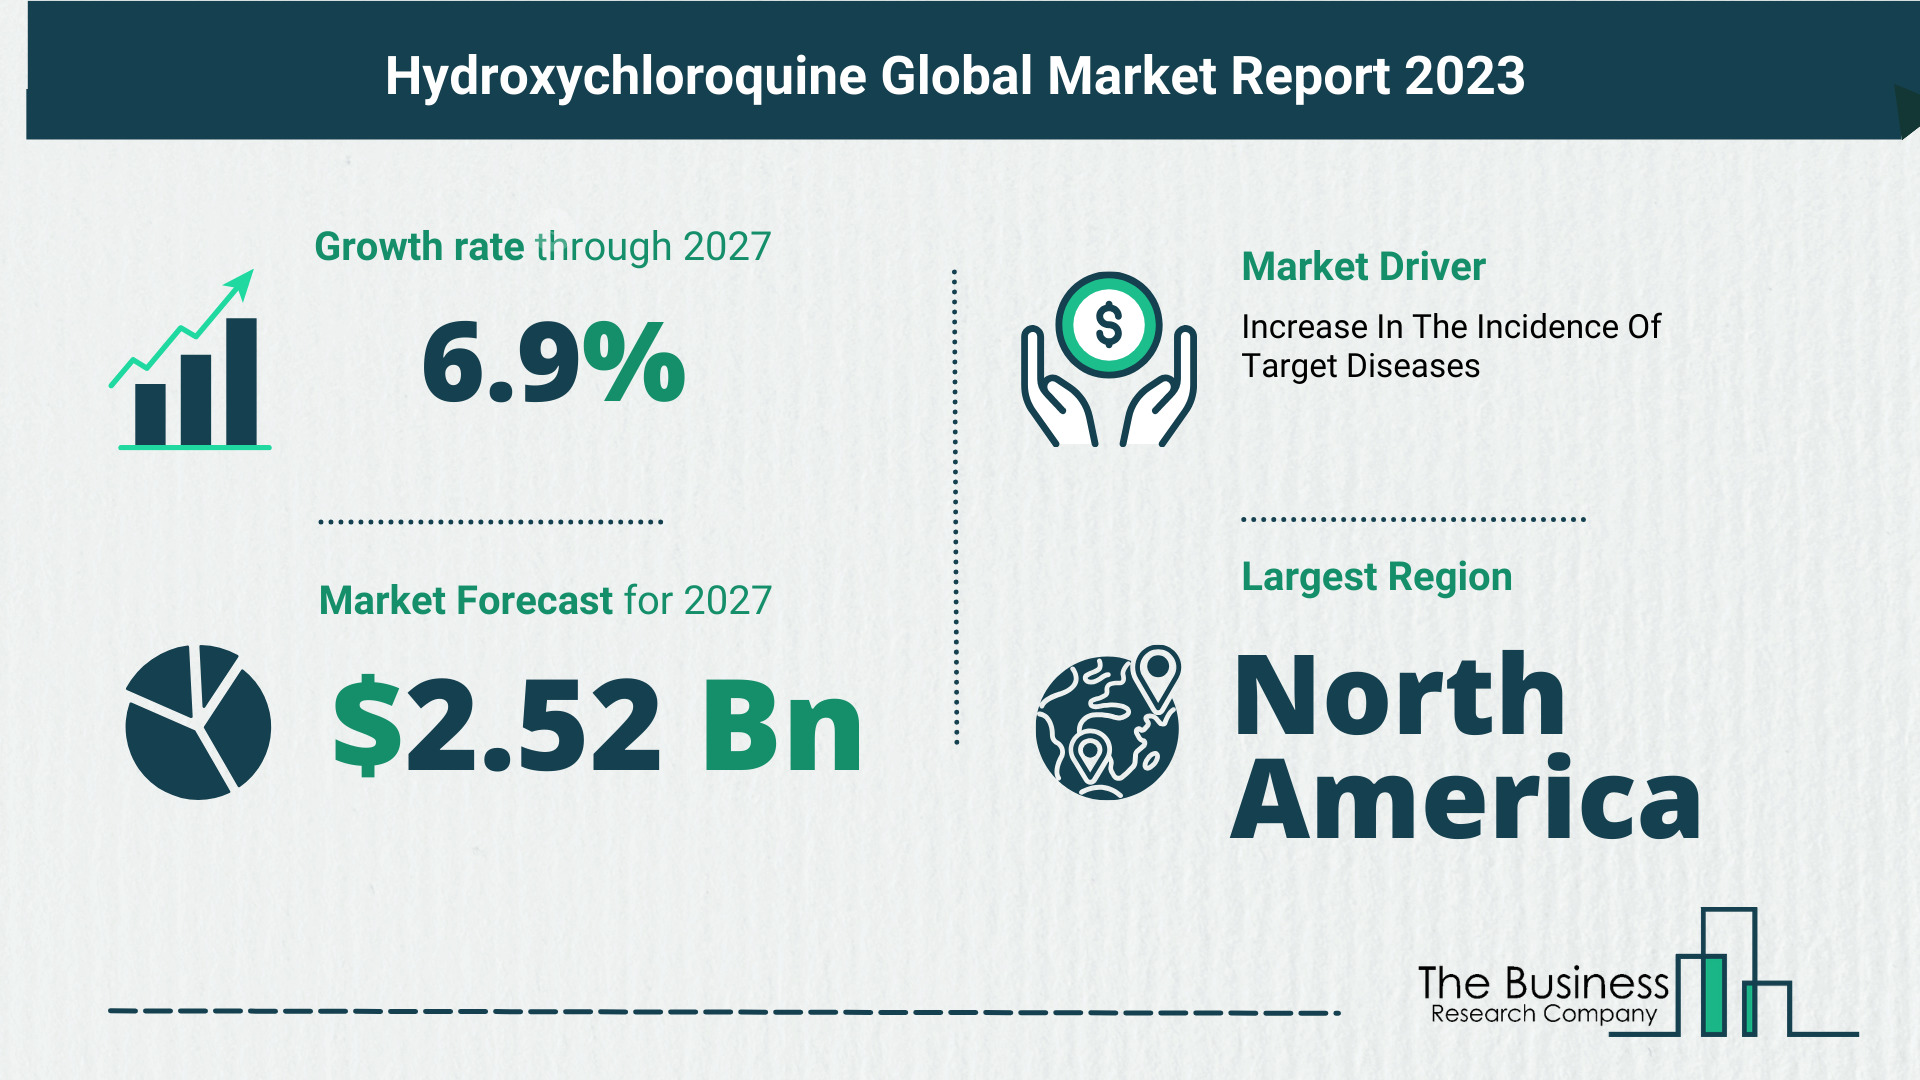 Hydroxychloroquine Market Forecast 2023: Forecast Market Size, Drivers And Key Segments